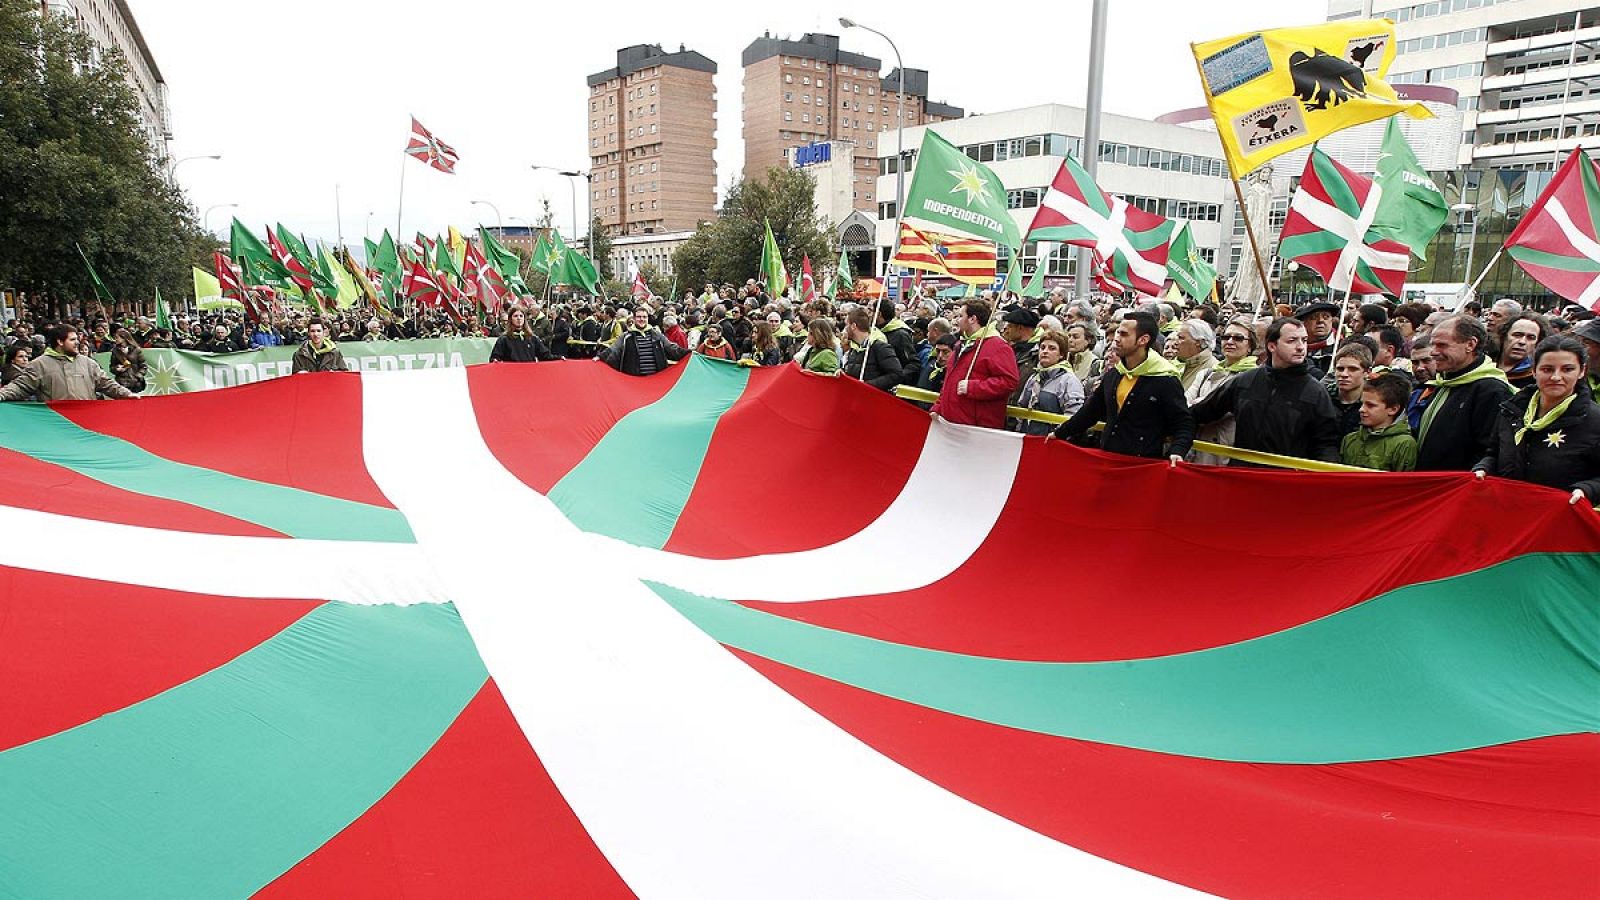 Baja cuatro puntos, hasta el 21%, el número de vascos partidarios de la independencia de Euskadi